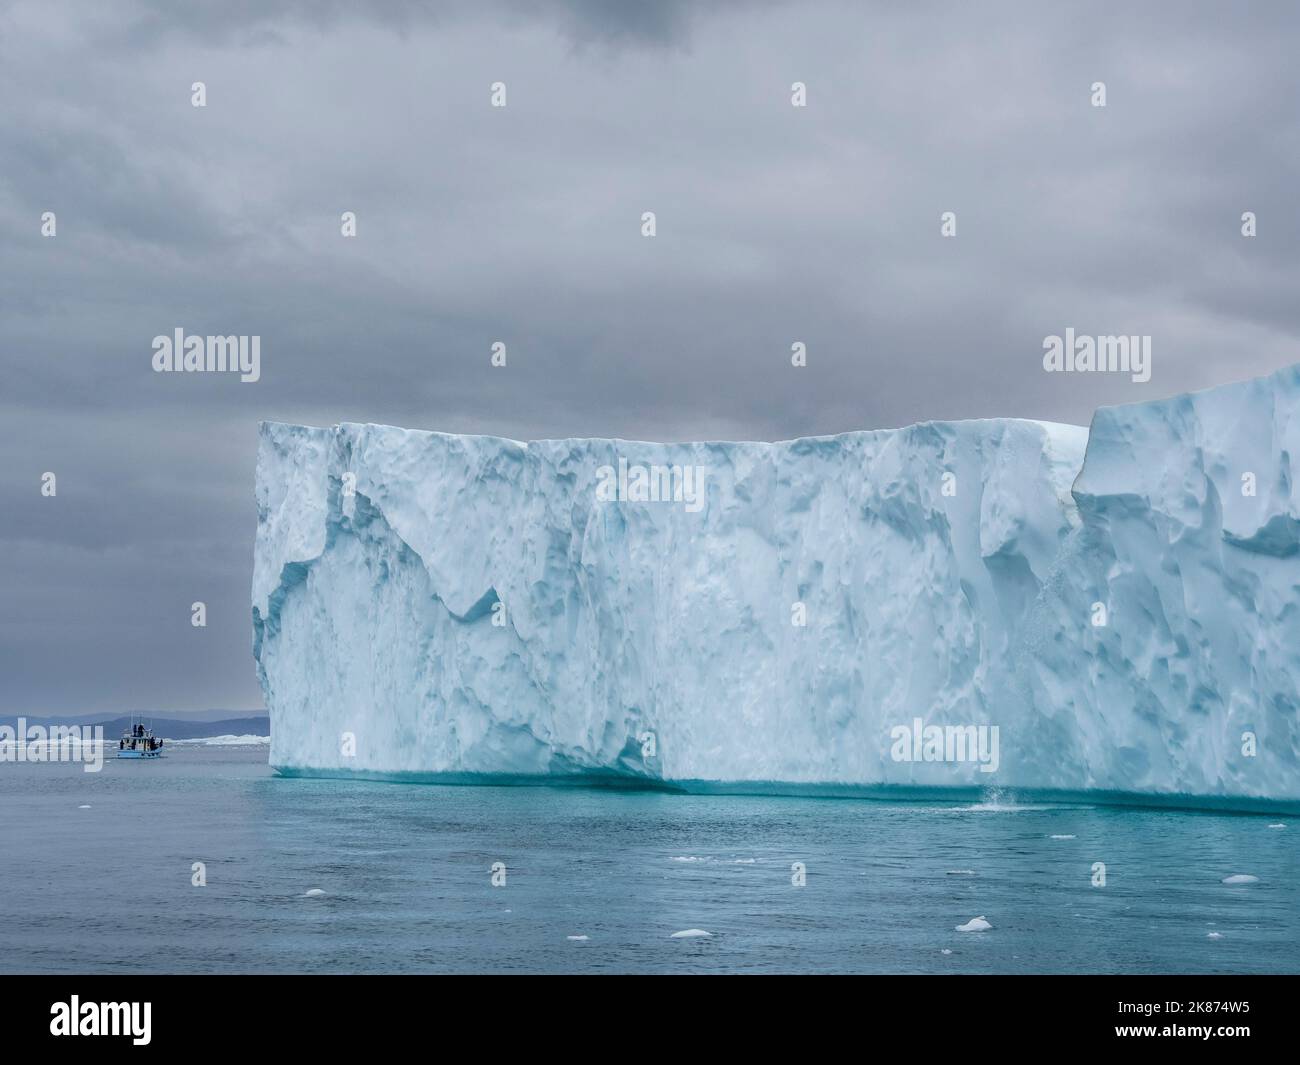 Los turistas que toman un tour de hielo en un pequeño barco viendo icebergs desde el Ilulissat Icefjord, justo a las afueras de Ilulissat, Groenlandia, Dinamarca, regiones polares Foto de stock